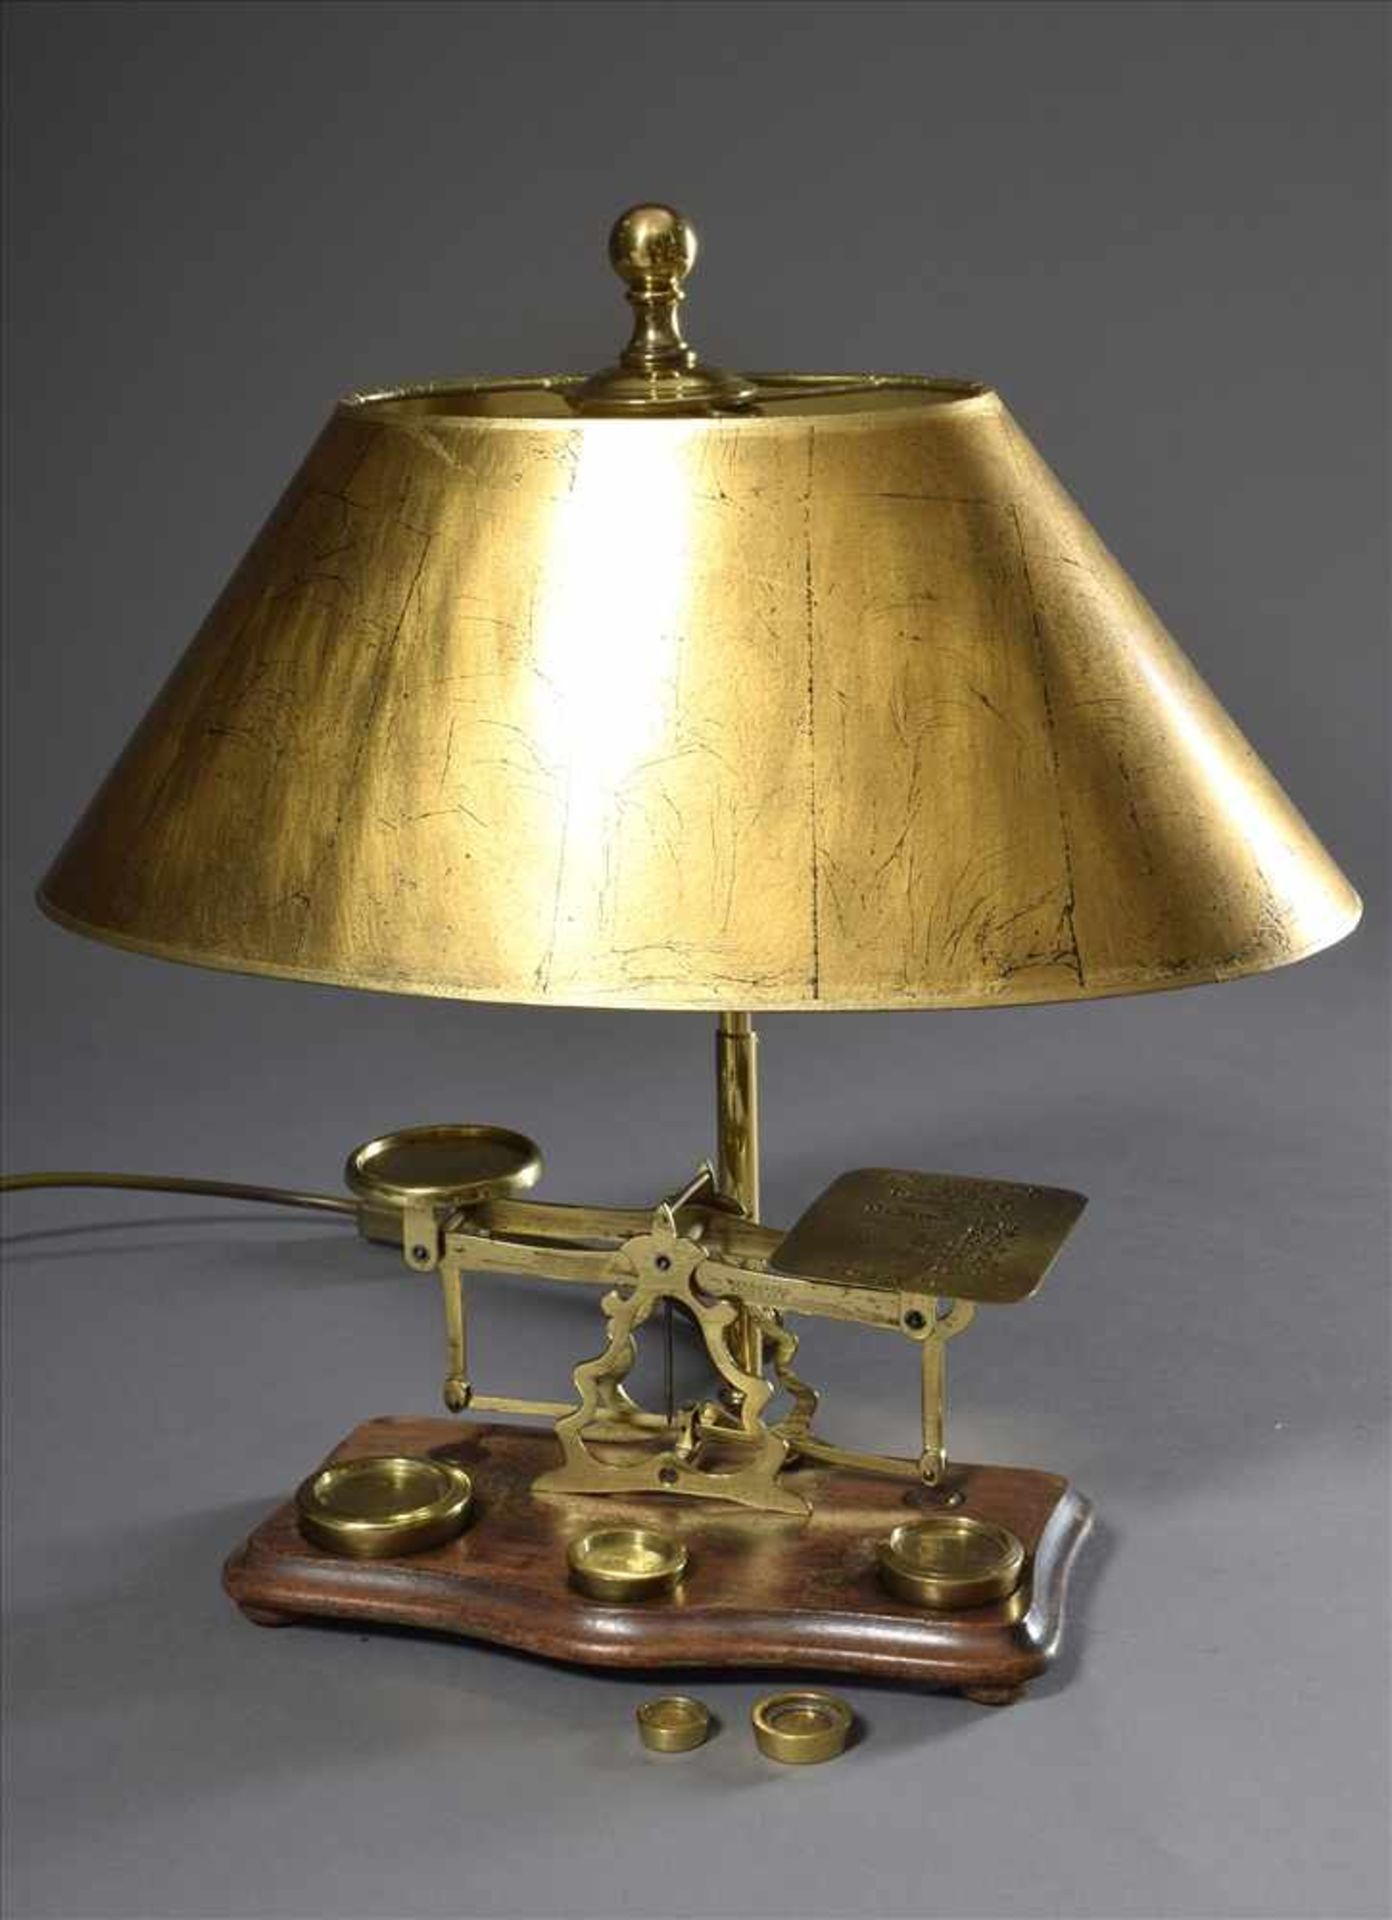 Englische Messing Briefwaage als Lampe montiert, mit Gewichten, H. 43cmEnglish brass letter scale